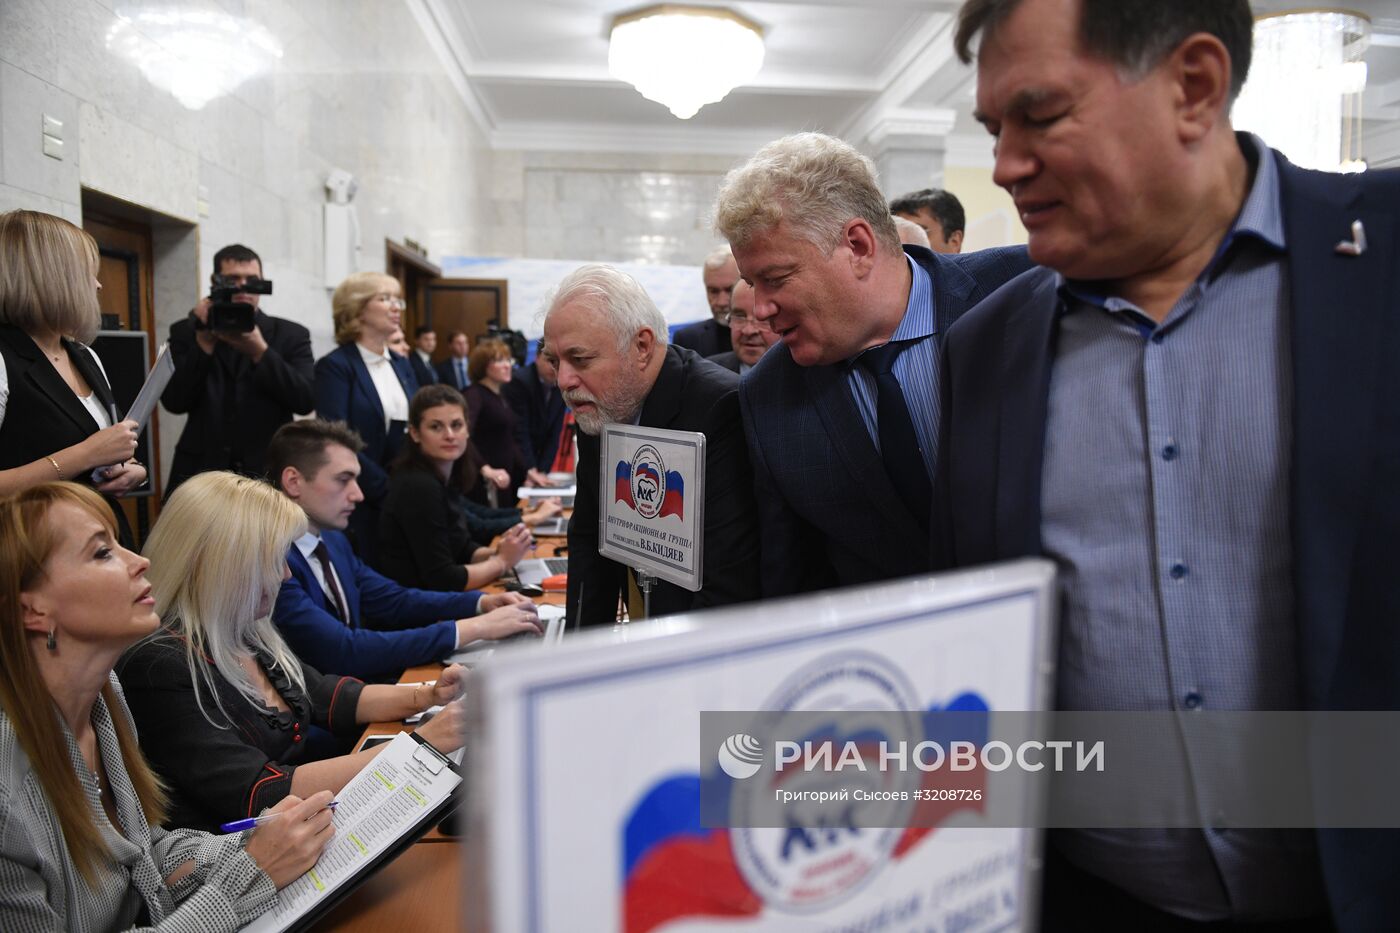 Выборы главы фракции "Единая Россия" в Госдуме